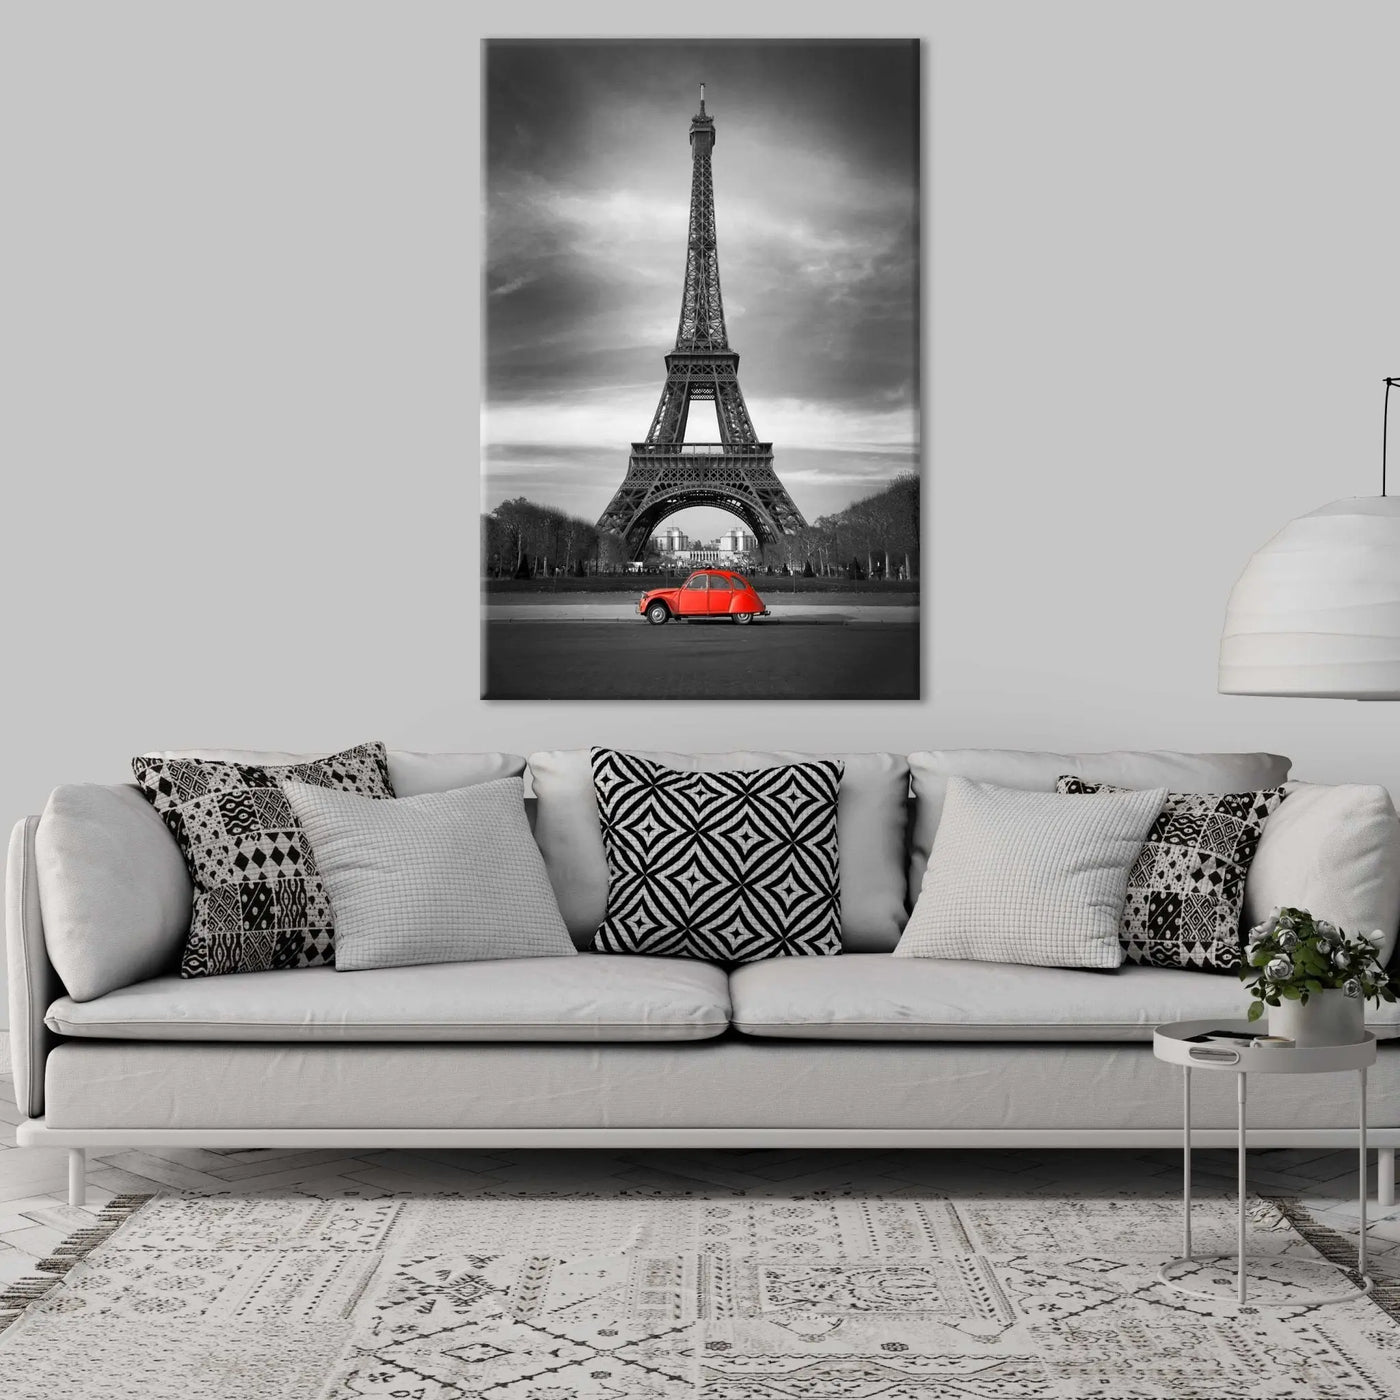 "RED IN PARIS" - Art For Everyone